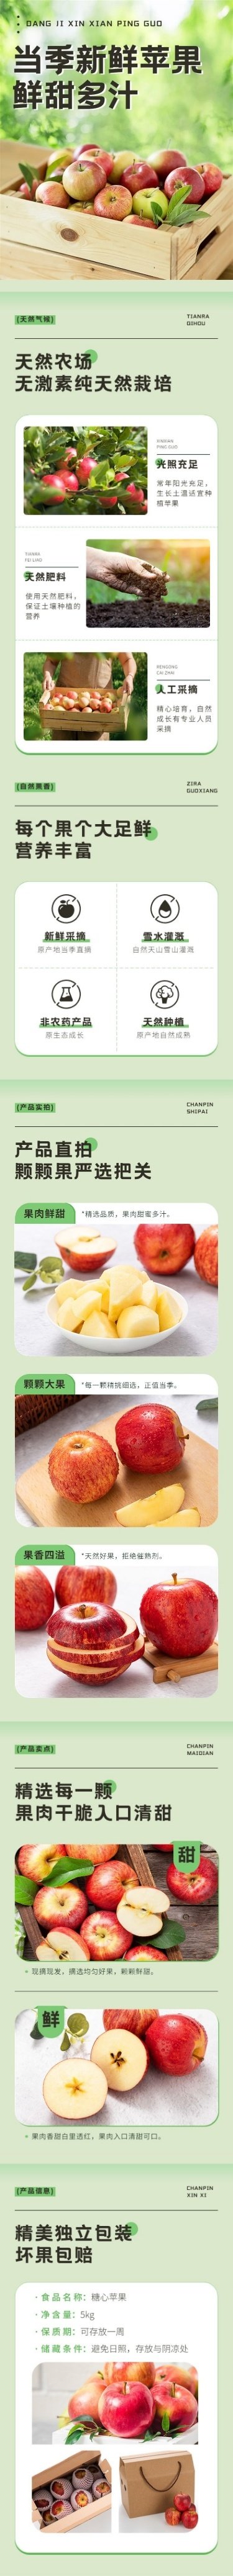 实景水果苹果商品详情页